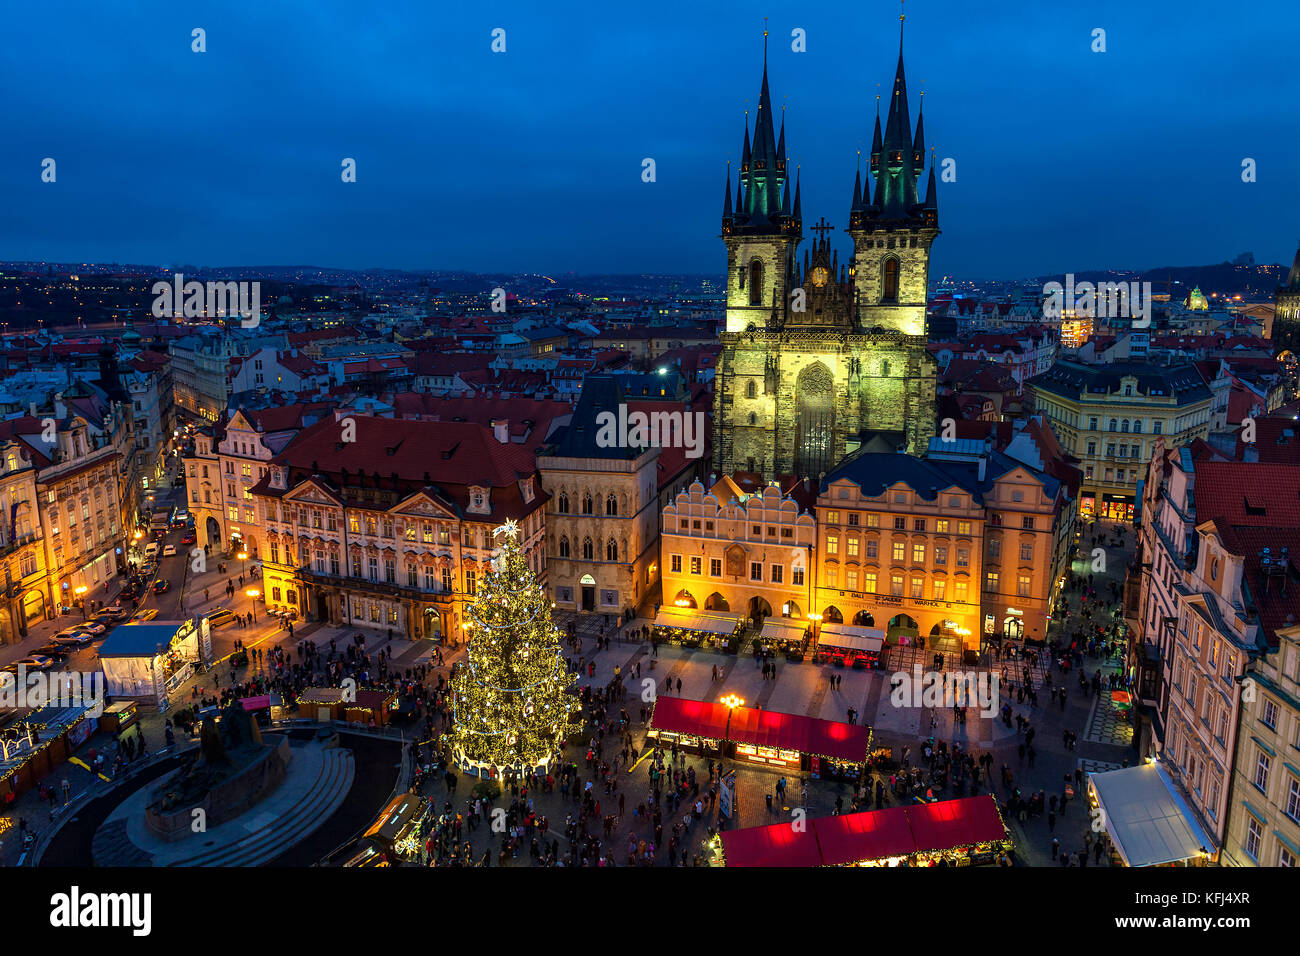 Prag, Tschechische Republik - 10. Dezember 2015: Abendlicher Blick von oben auf den traditionellen Weihnachtsmarkt auf dem Altstädter Ring in Prag. Stockfoto